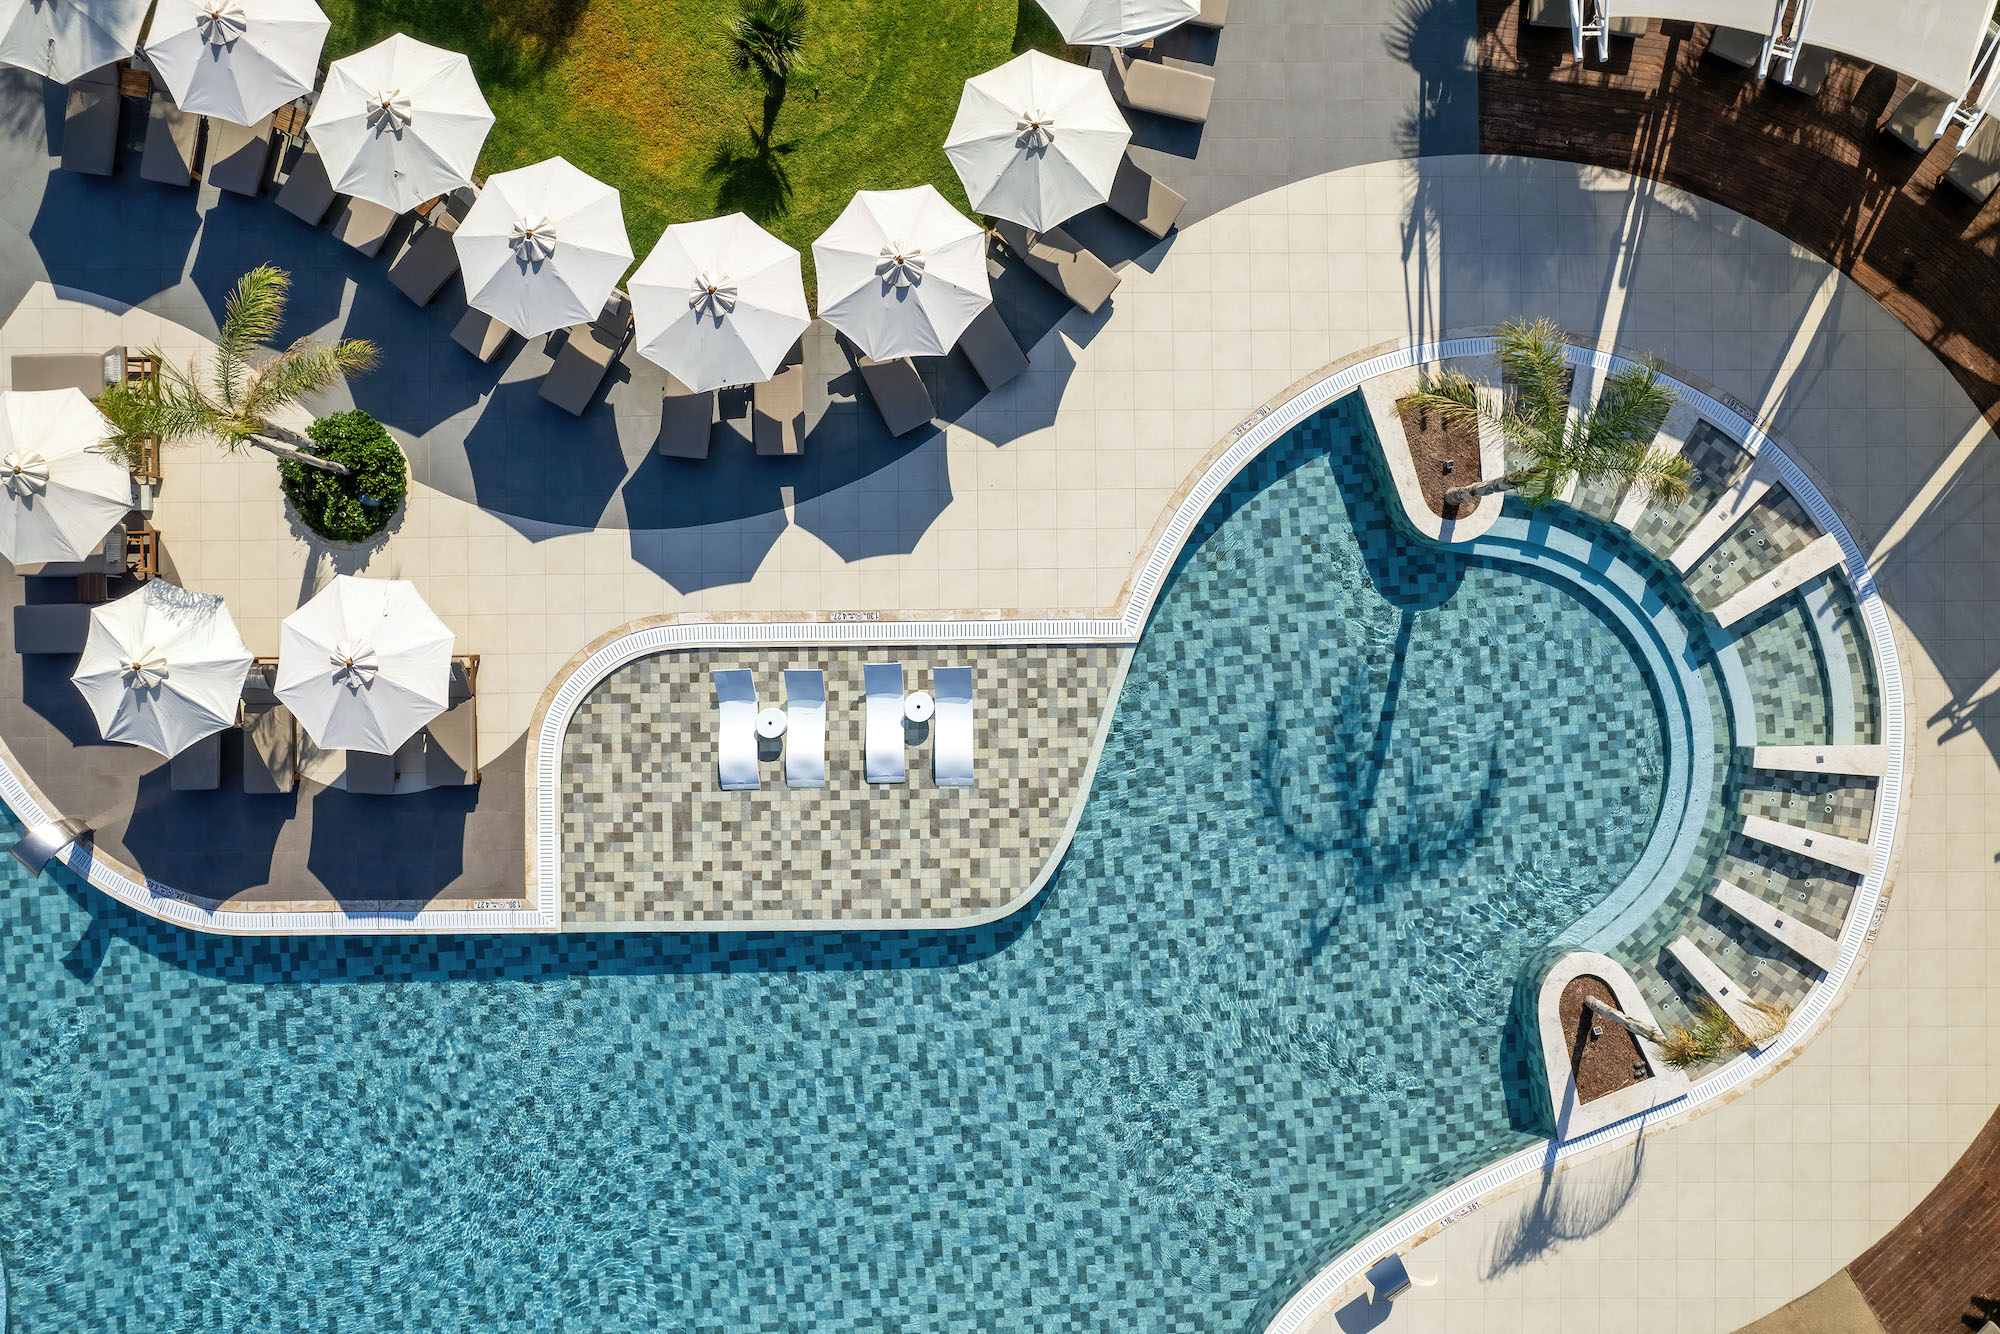 Why We Love This Mediterranean Winter Sun Resort